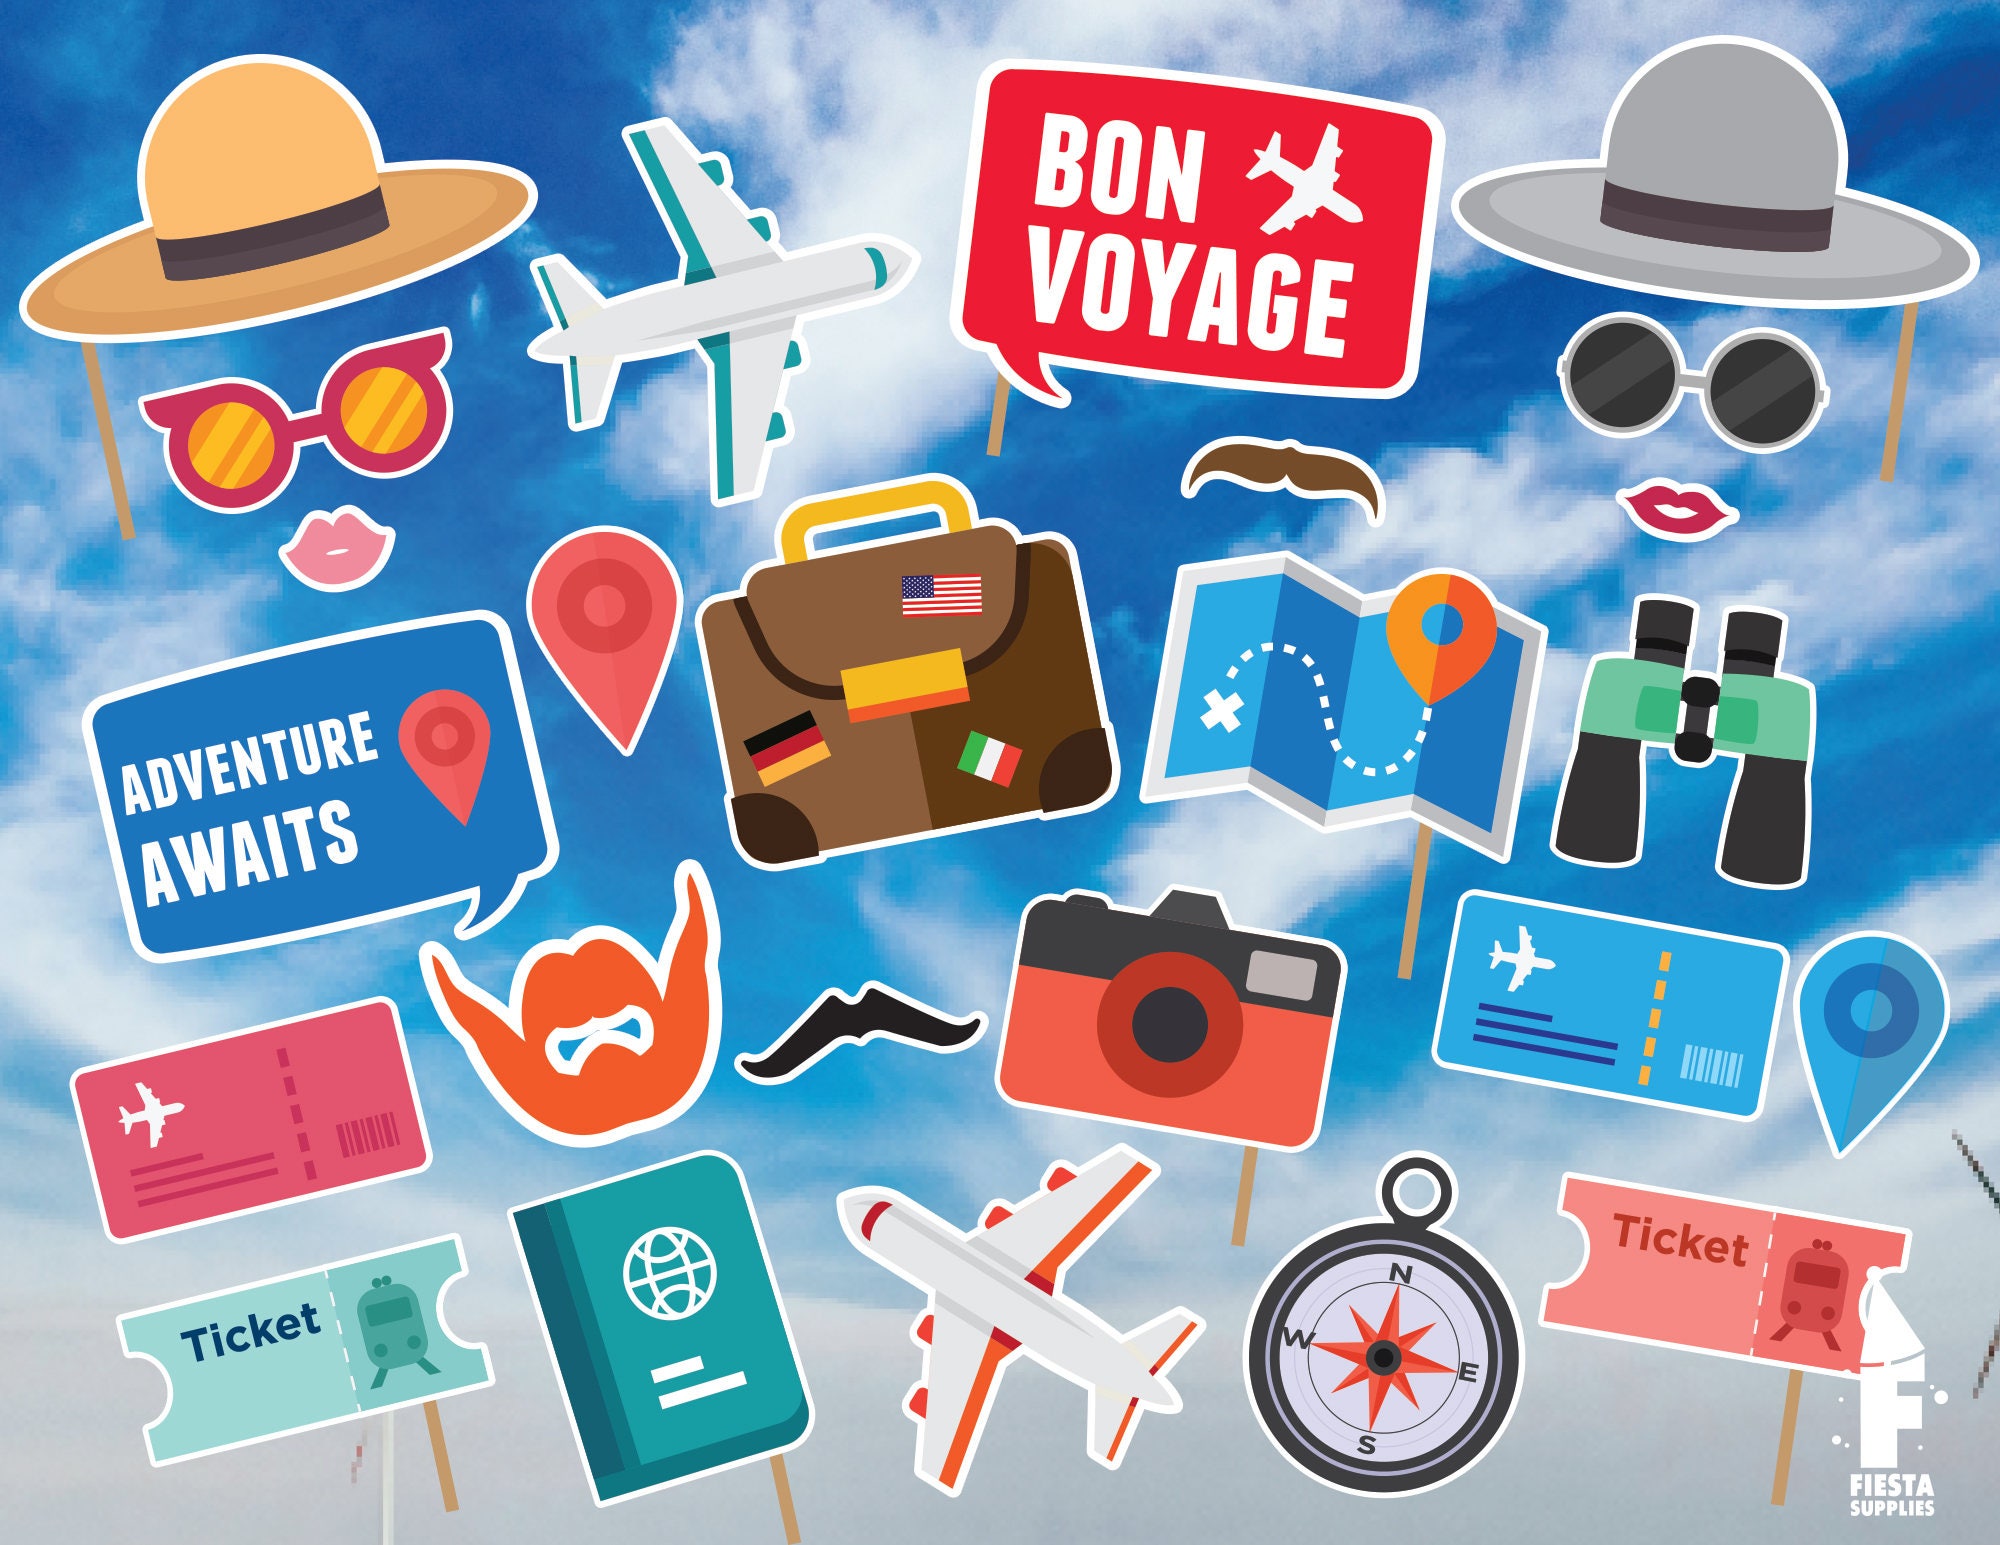 15-top-images-bon-voyage-decorations-uk-stowe-holidays-bon-voyage